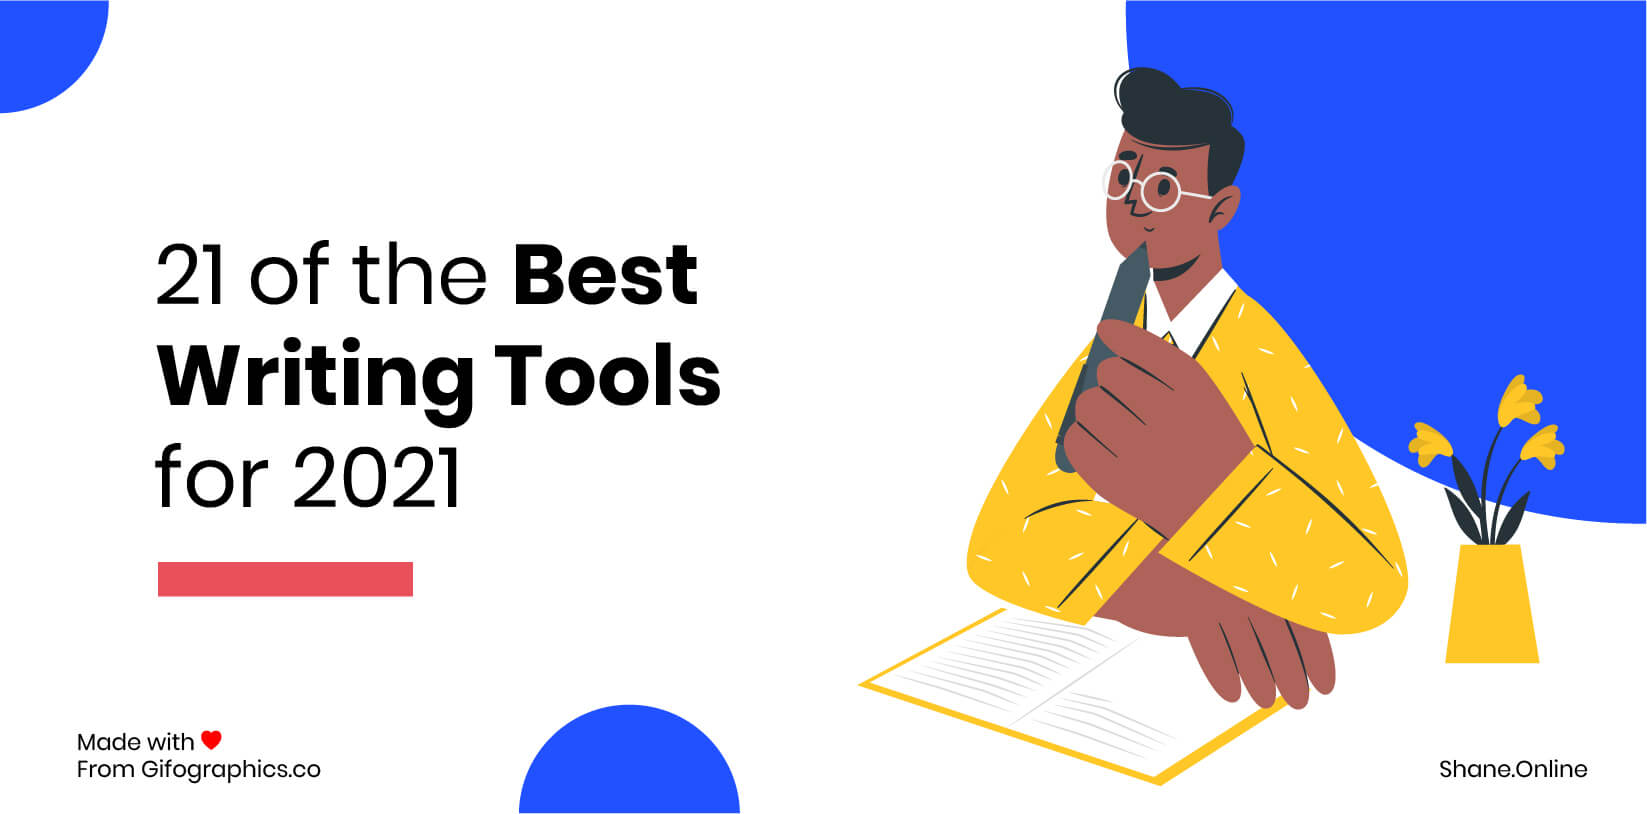 21 najlepszych narzędzi do pisania na rok 2021